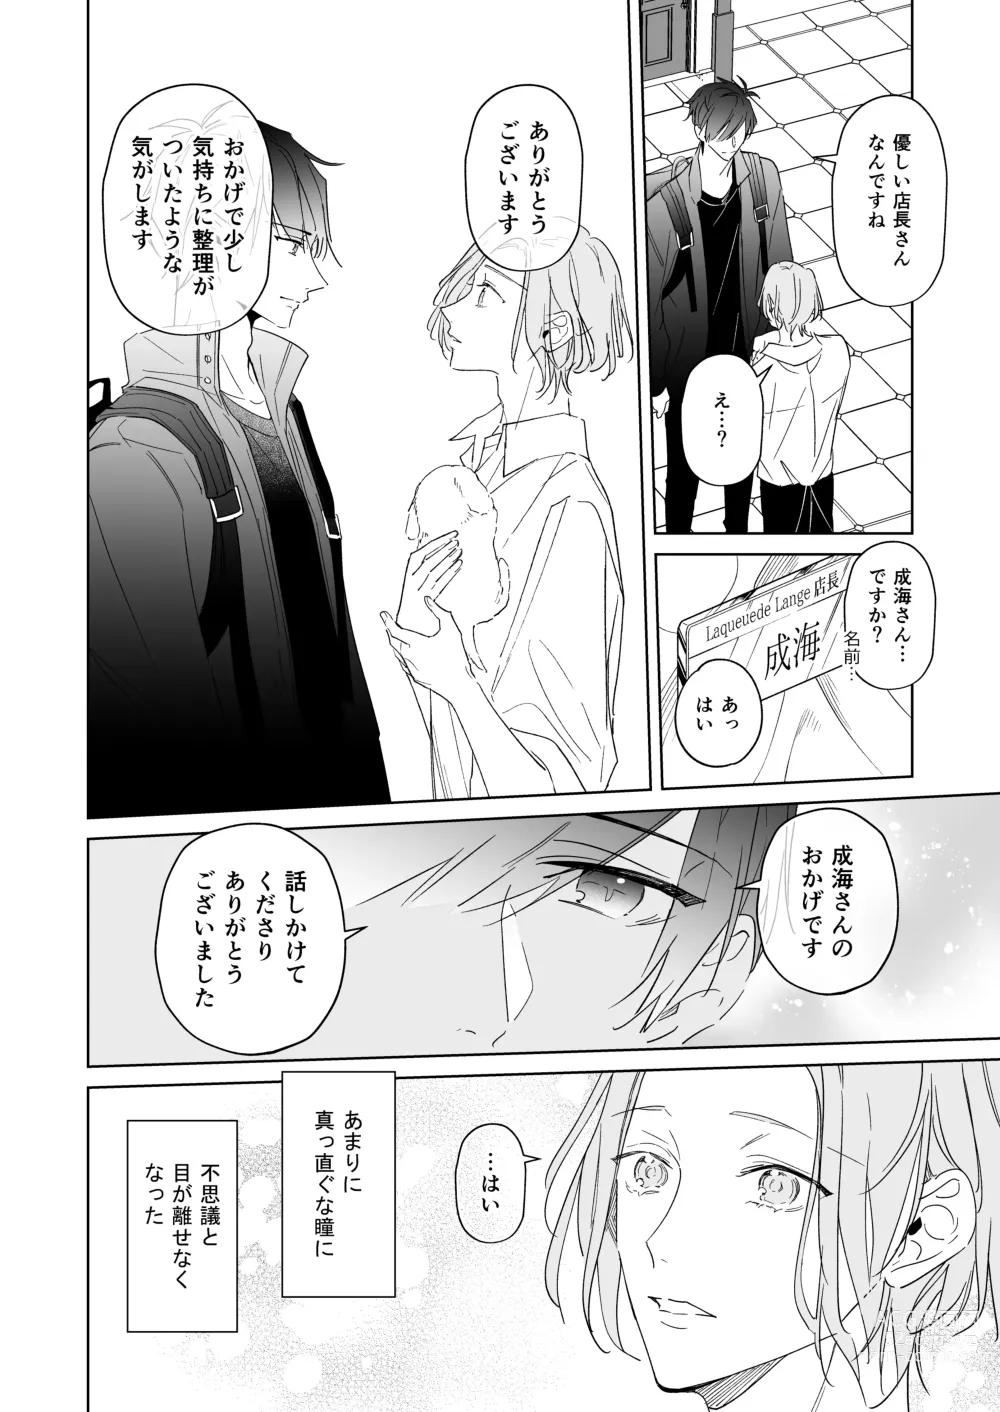 Page 12 of doujinshi Koi wa, Itsu datte